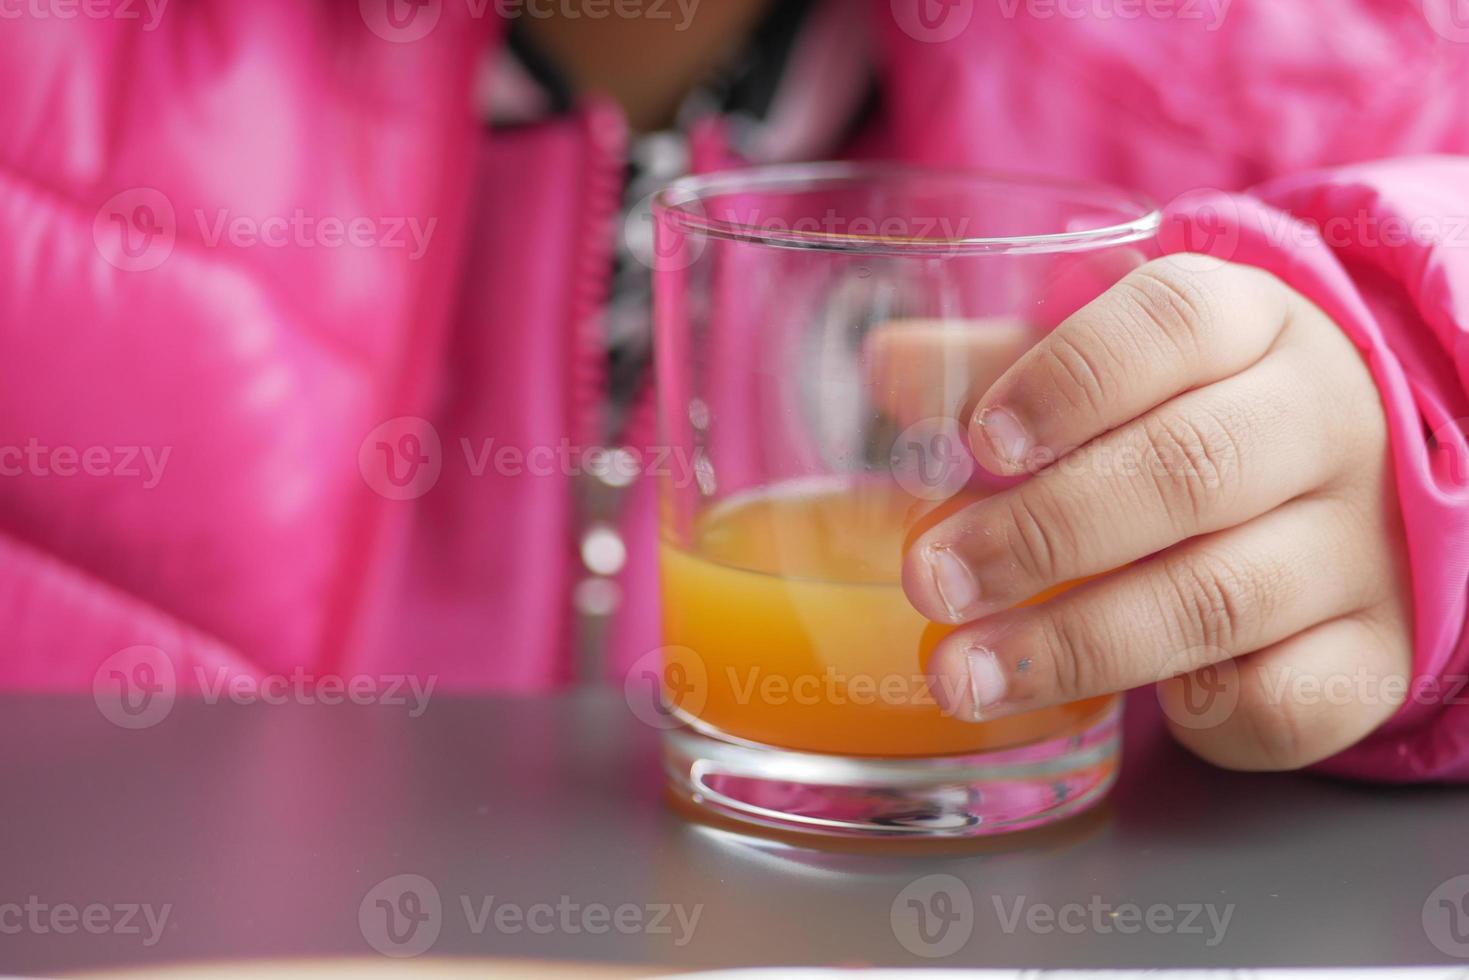 child holding a glass of orange juice photo